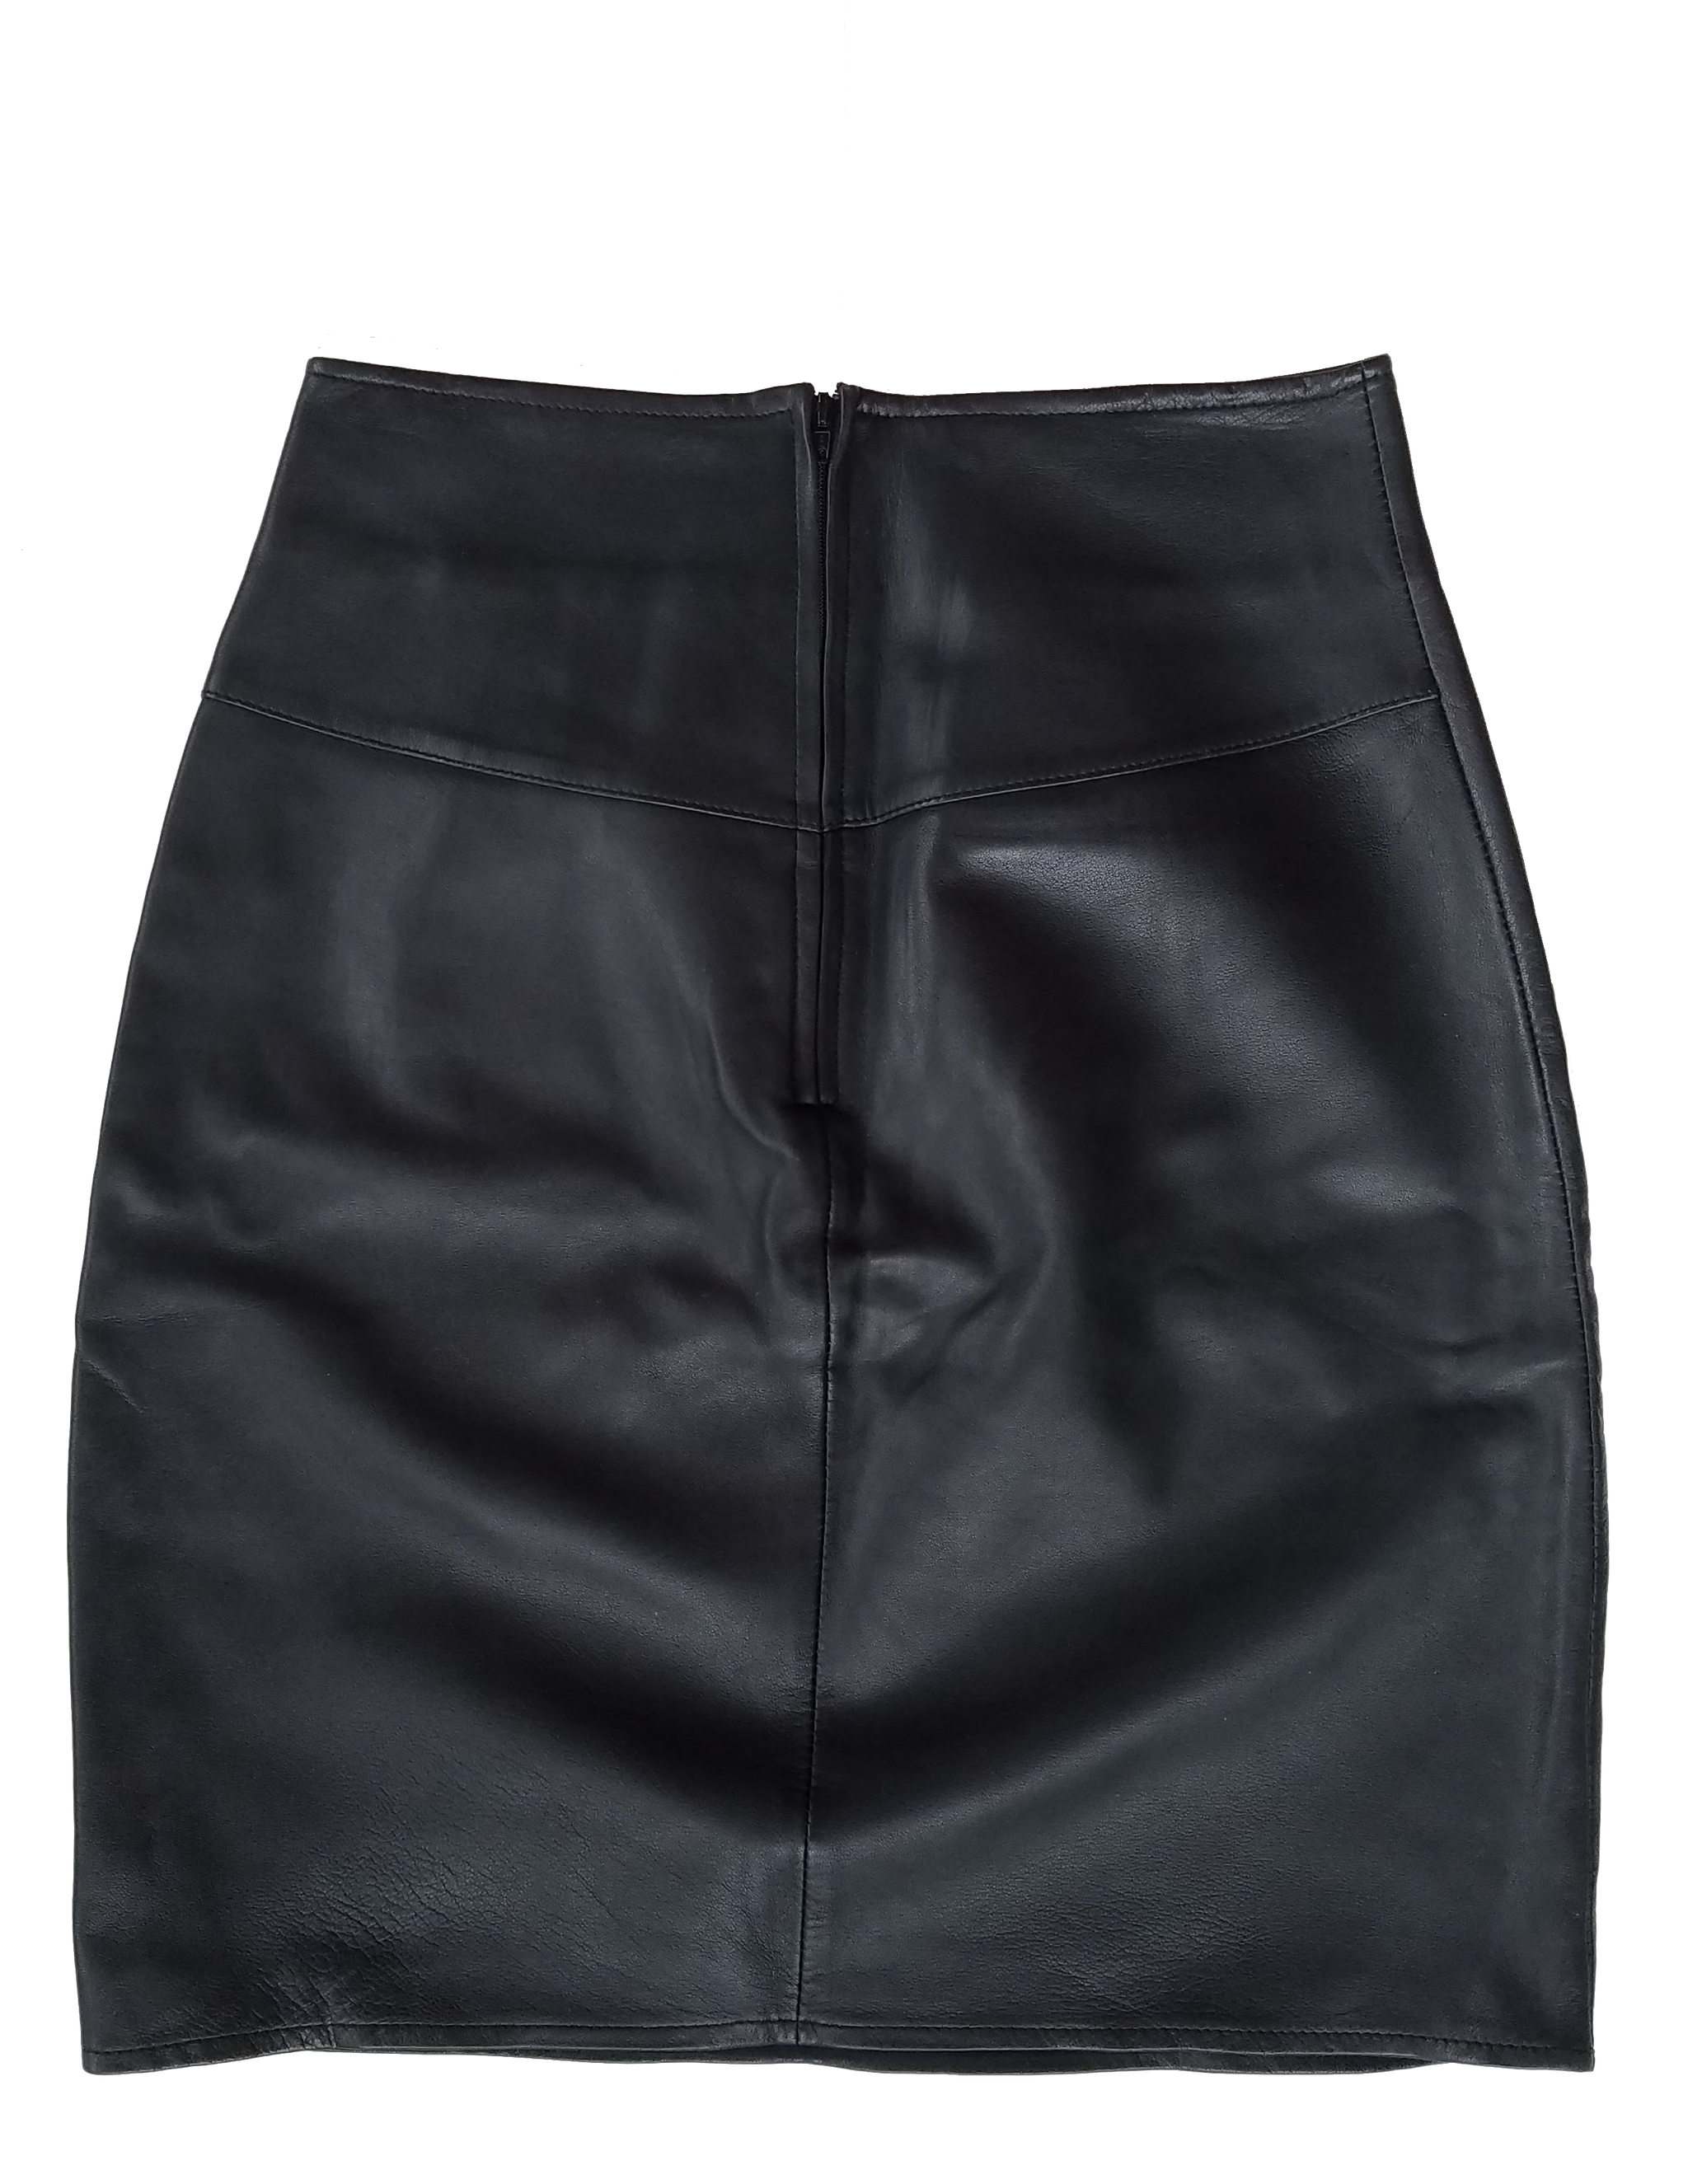 Vintage 90's Black Leather Mini Skirt